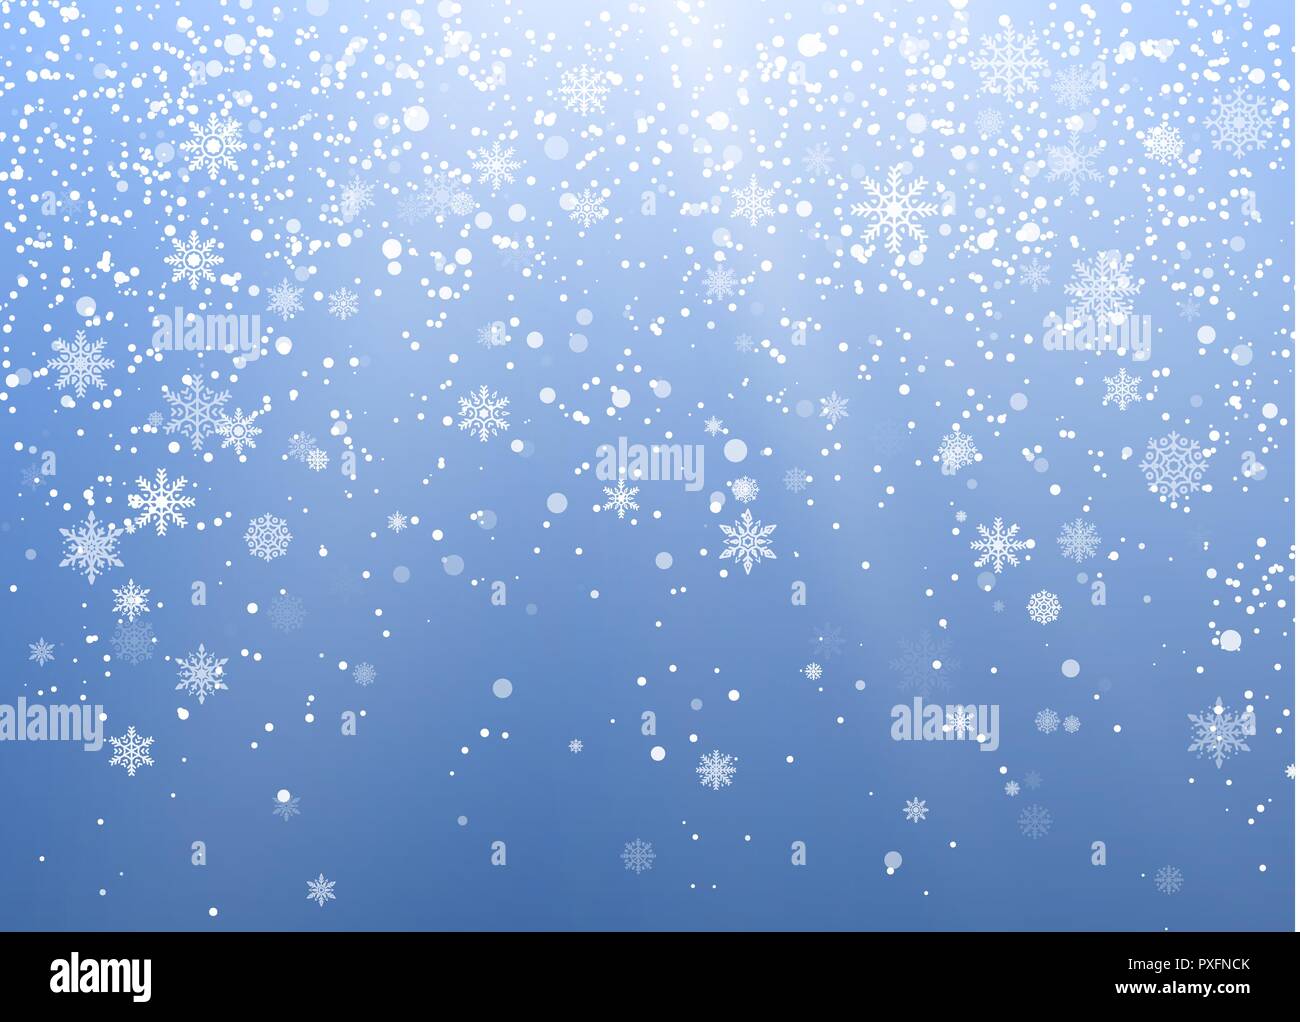 Saisonale Winterurlaub Hintergrund. Festiveal Schneefall am blauen Himmel. Weiße Schneeflocken fallen. Frost, Schnee und Sonnenschein. Vector Illustration Stock Vektor